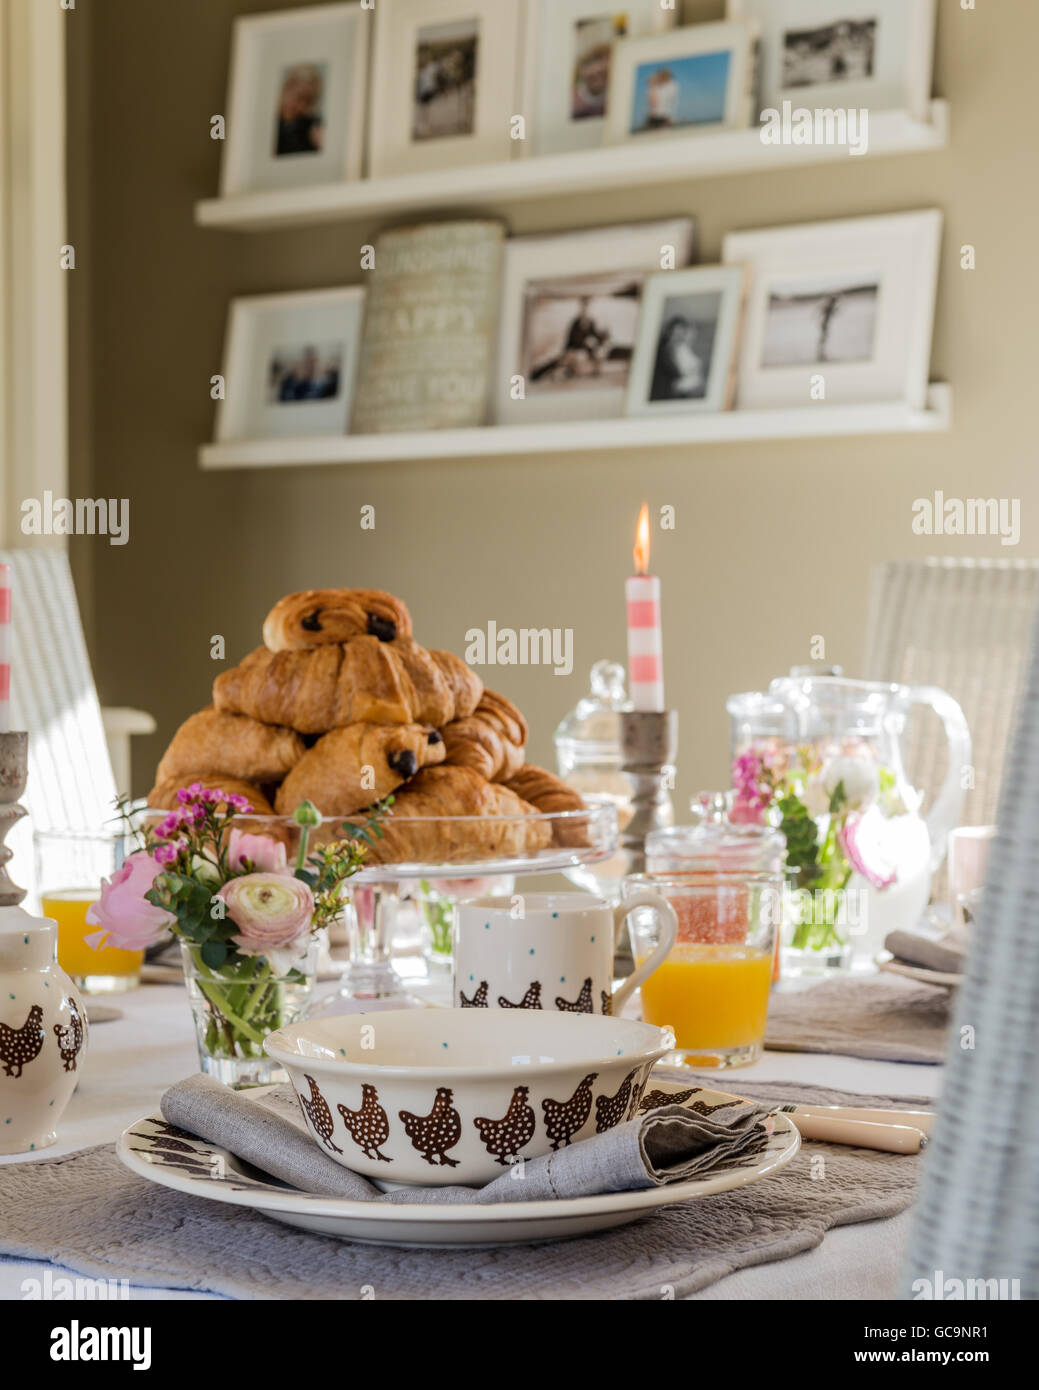 Pila di pain au chocolate sulla tabella prevista per la prima colazione. Floating ripiani sono nella parete di fondo la visualizzazione di famiglia Foto Stock